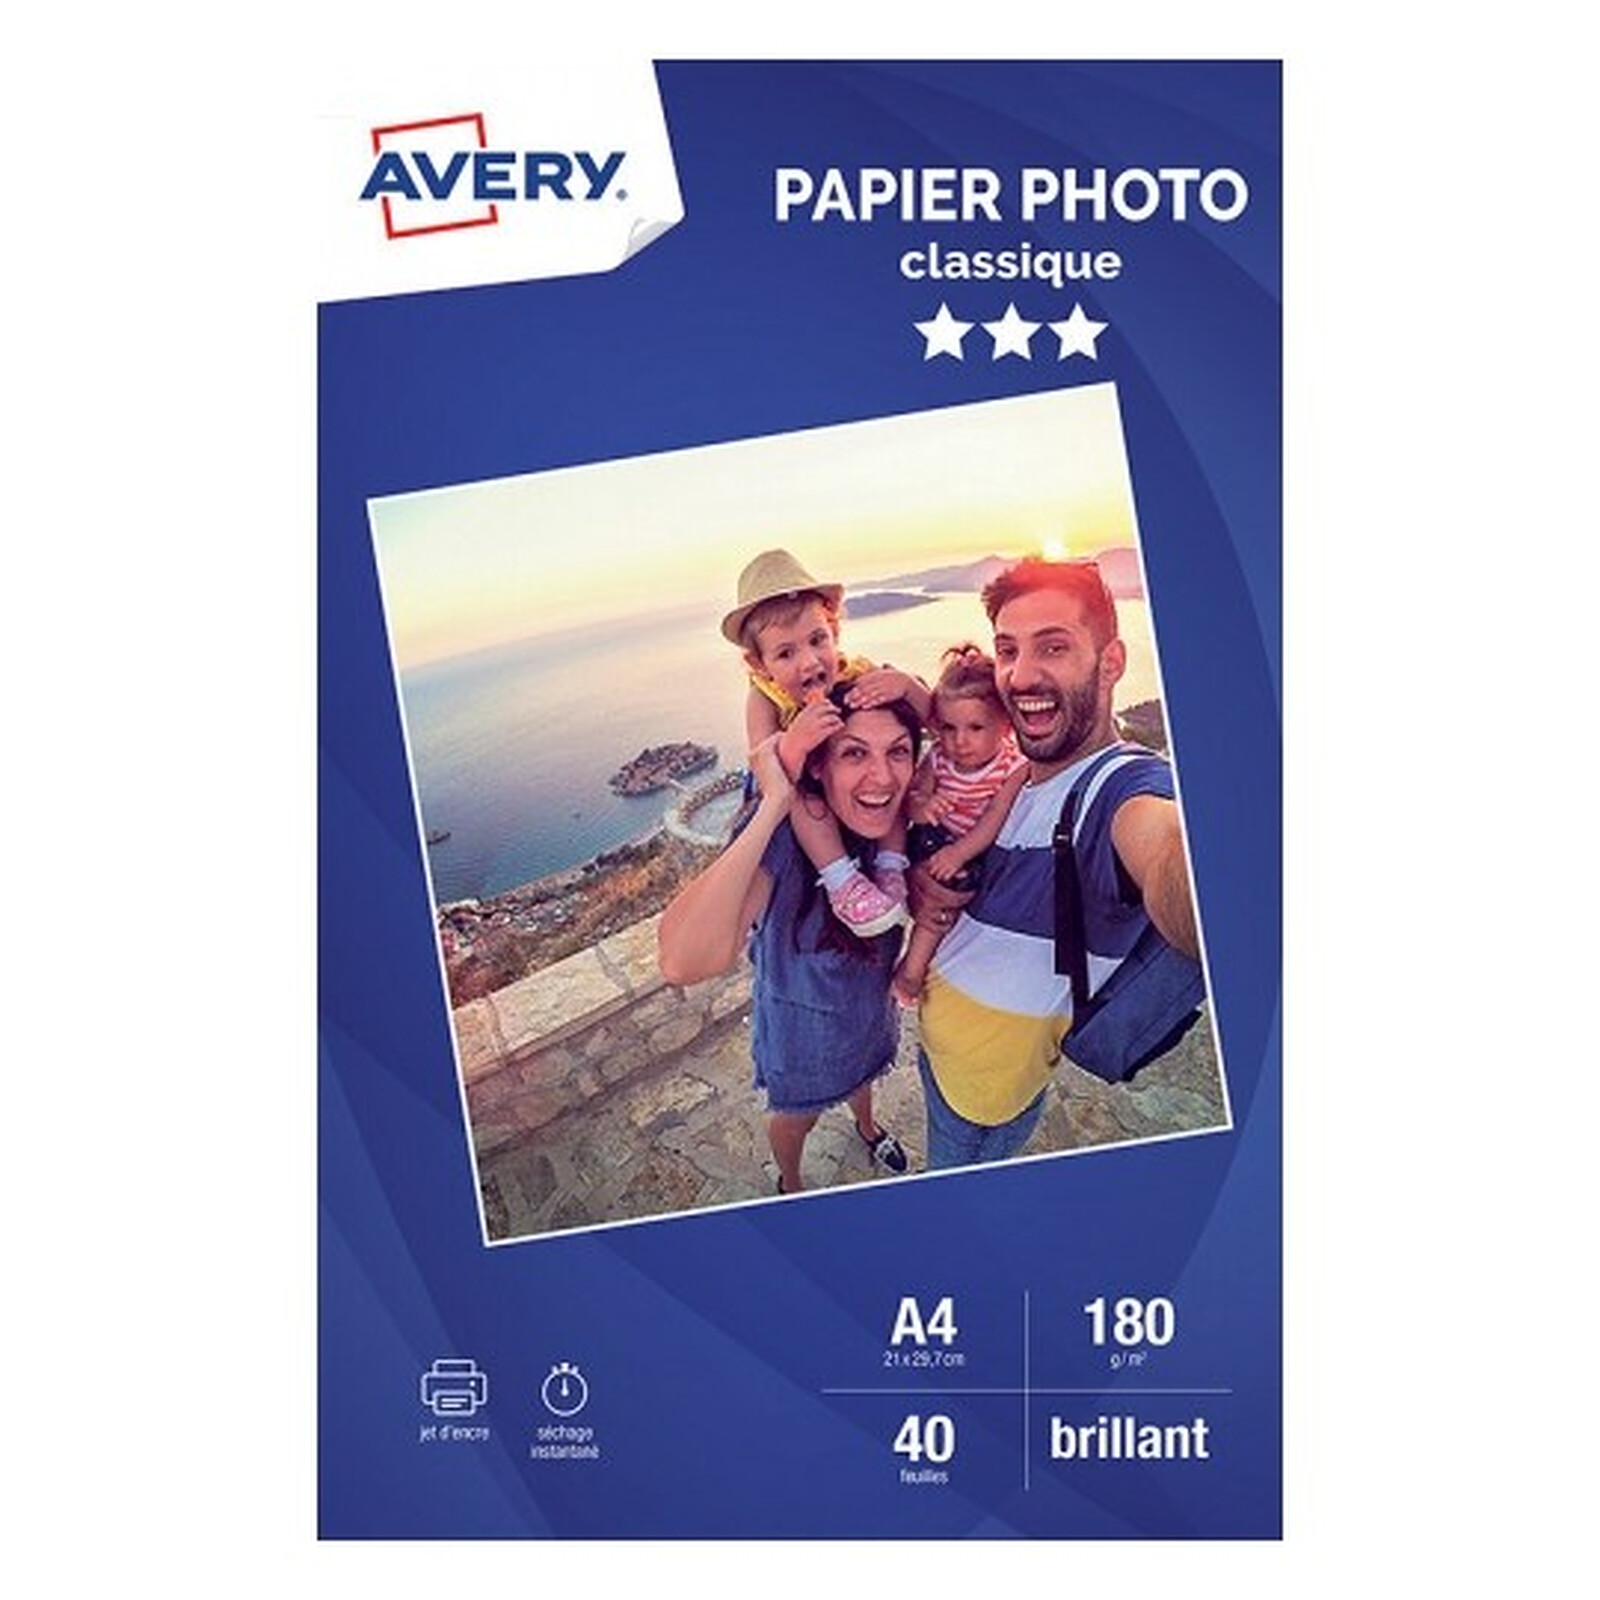 Avery Papier Photo Classique Jet d'encre A4, Blanc, Brillant, 180